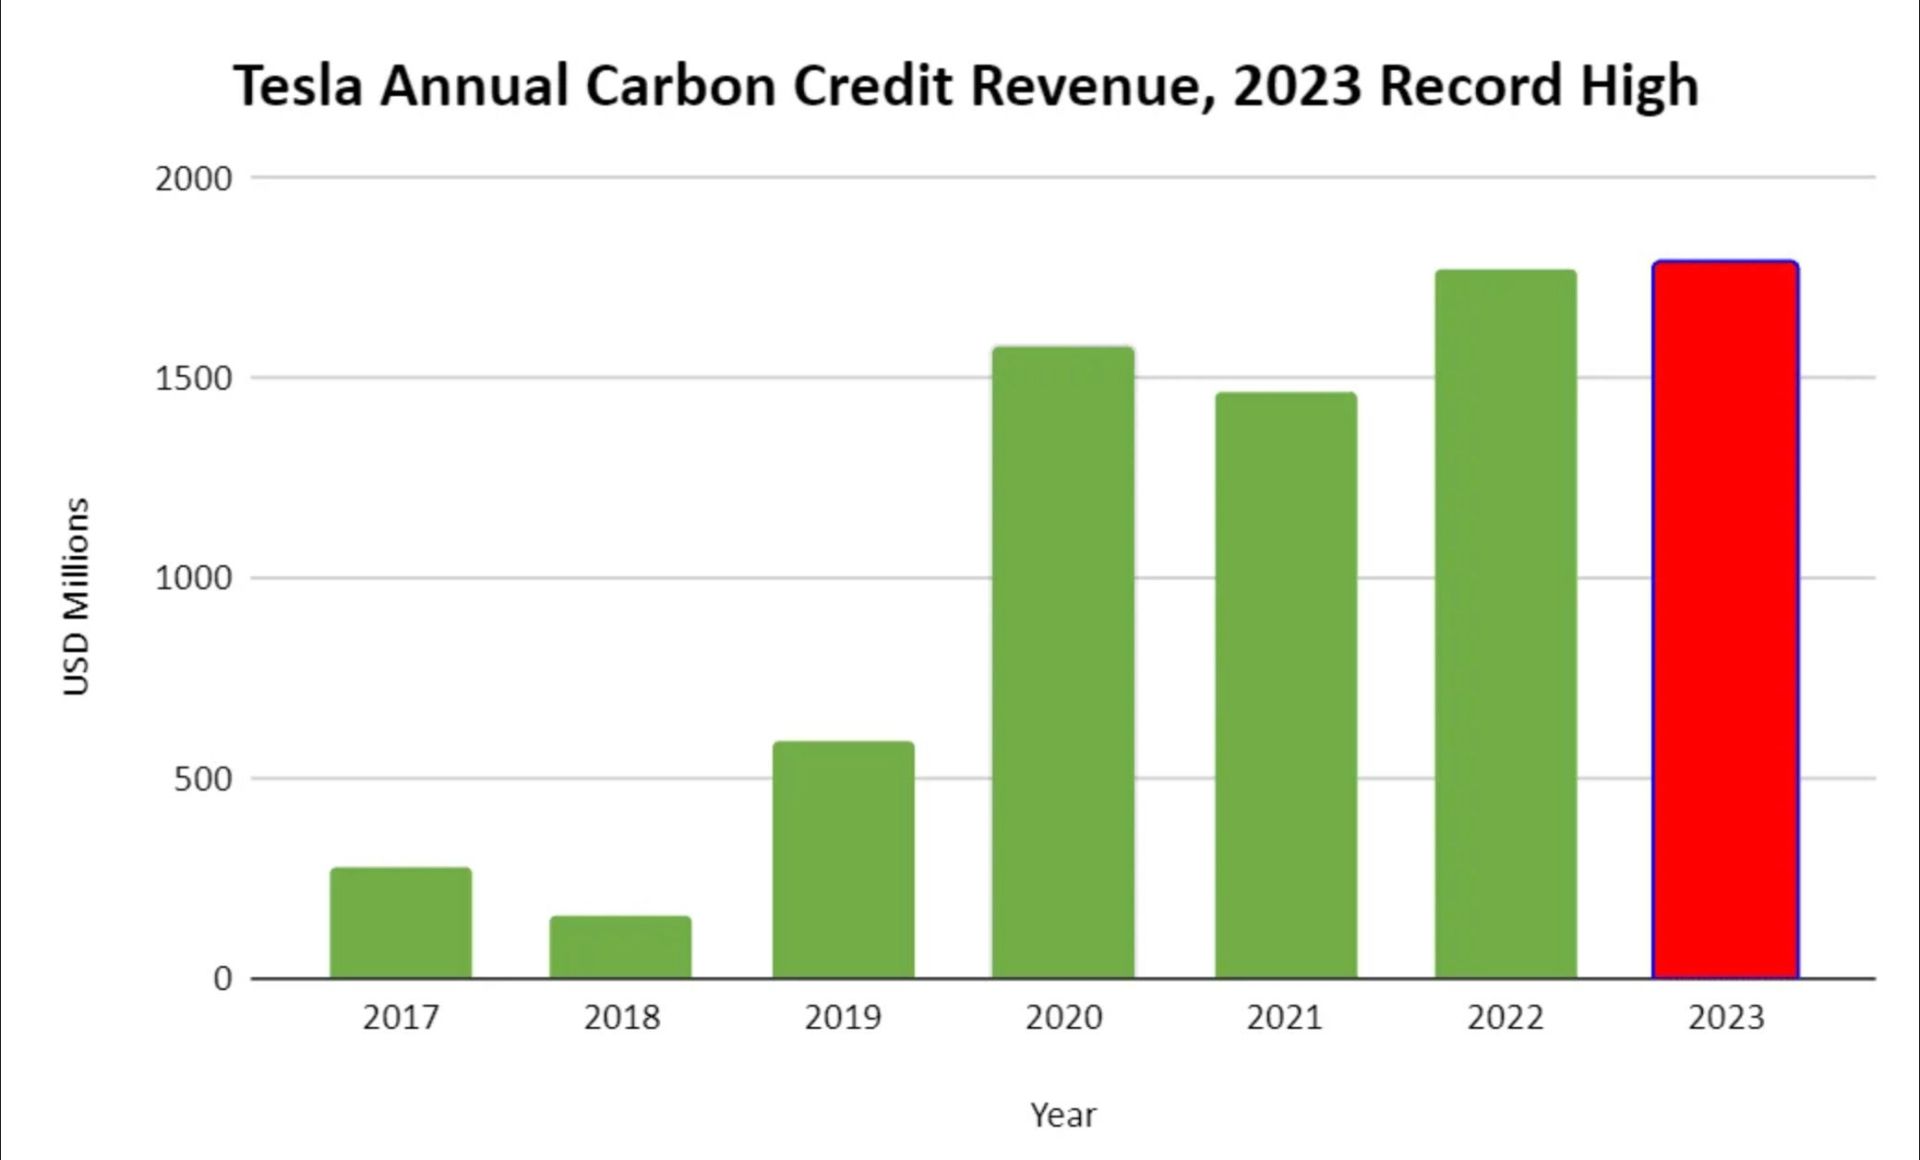 Doanh thu hàng năm từ việc bán tín chỉ carbon của Tesla giai đoạn 2017 - 2023 (đơn vị: triệu USD)